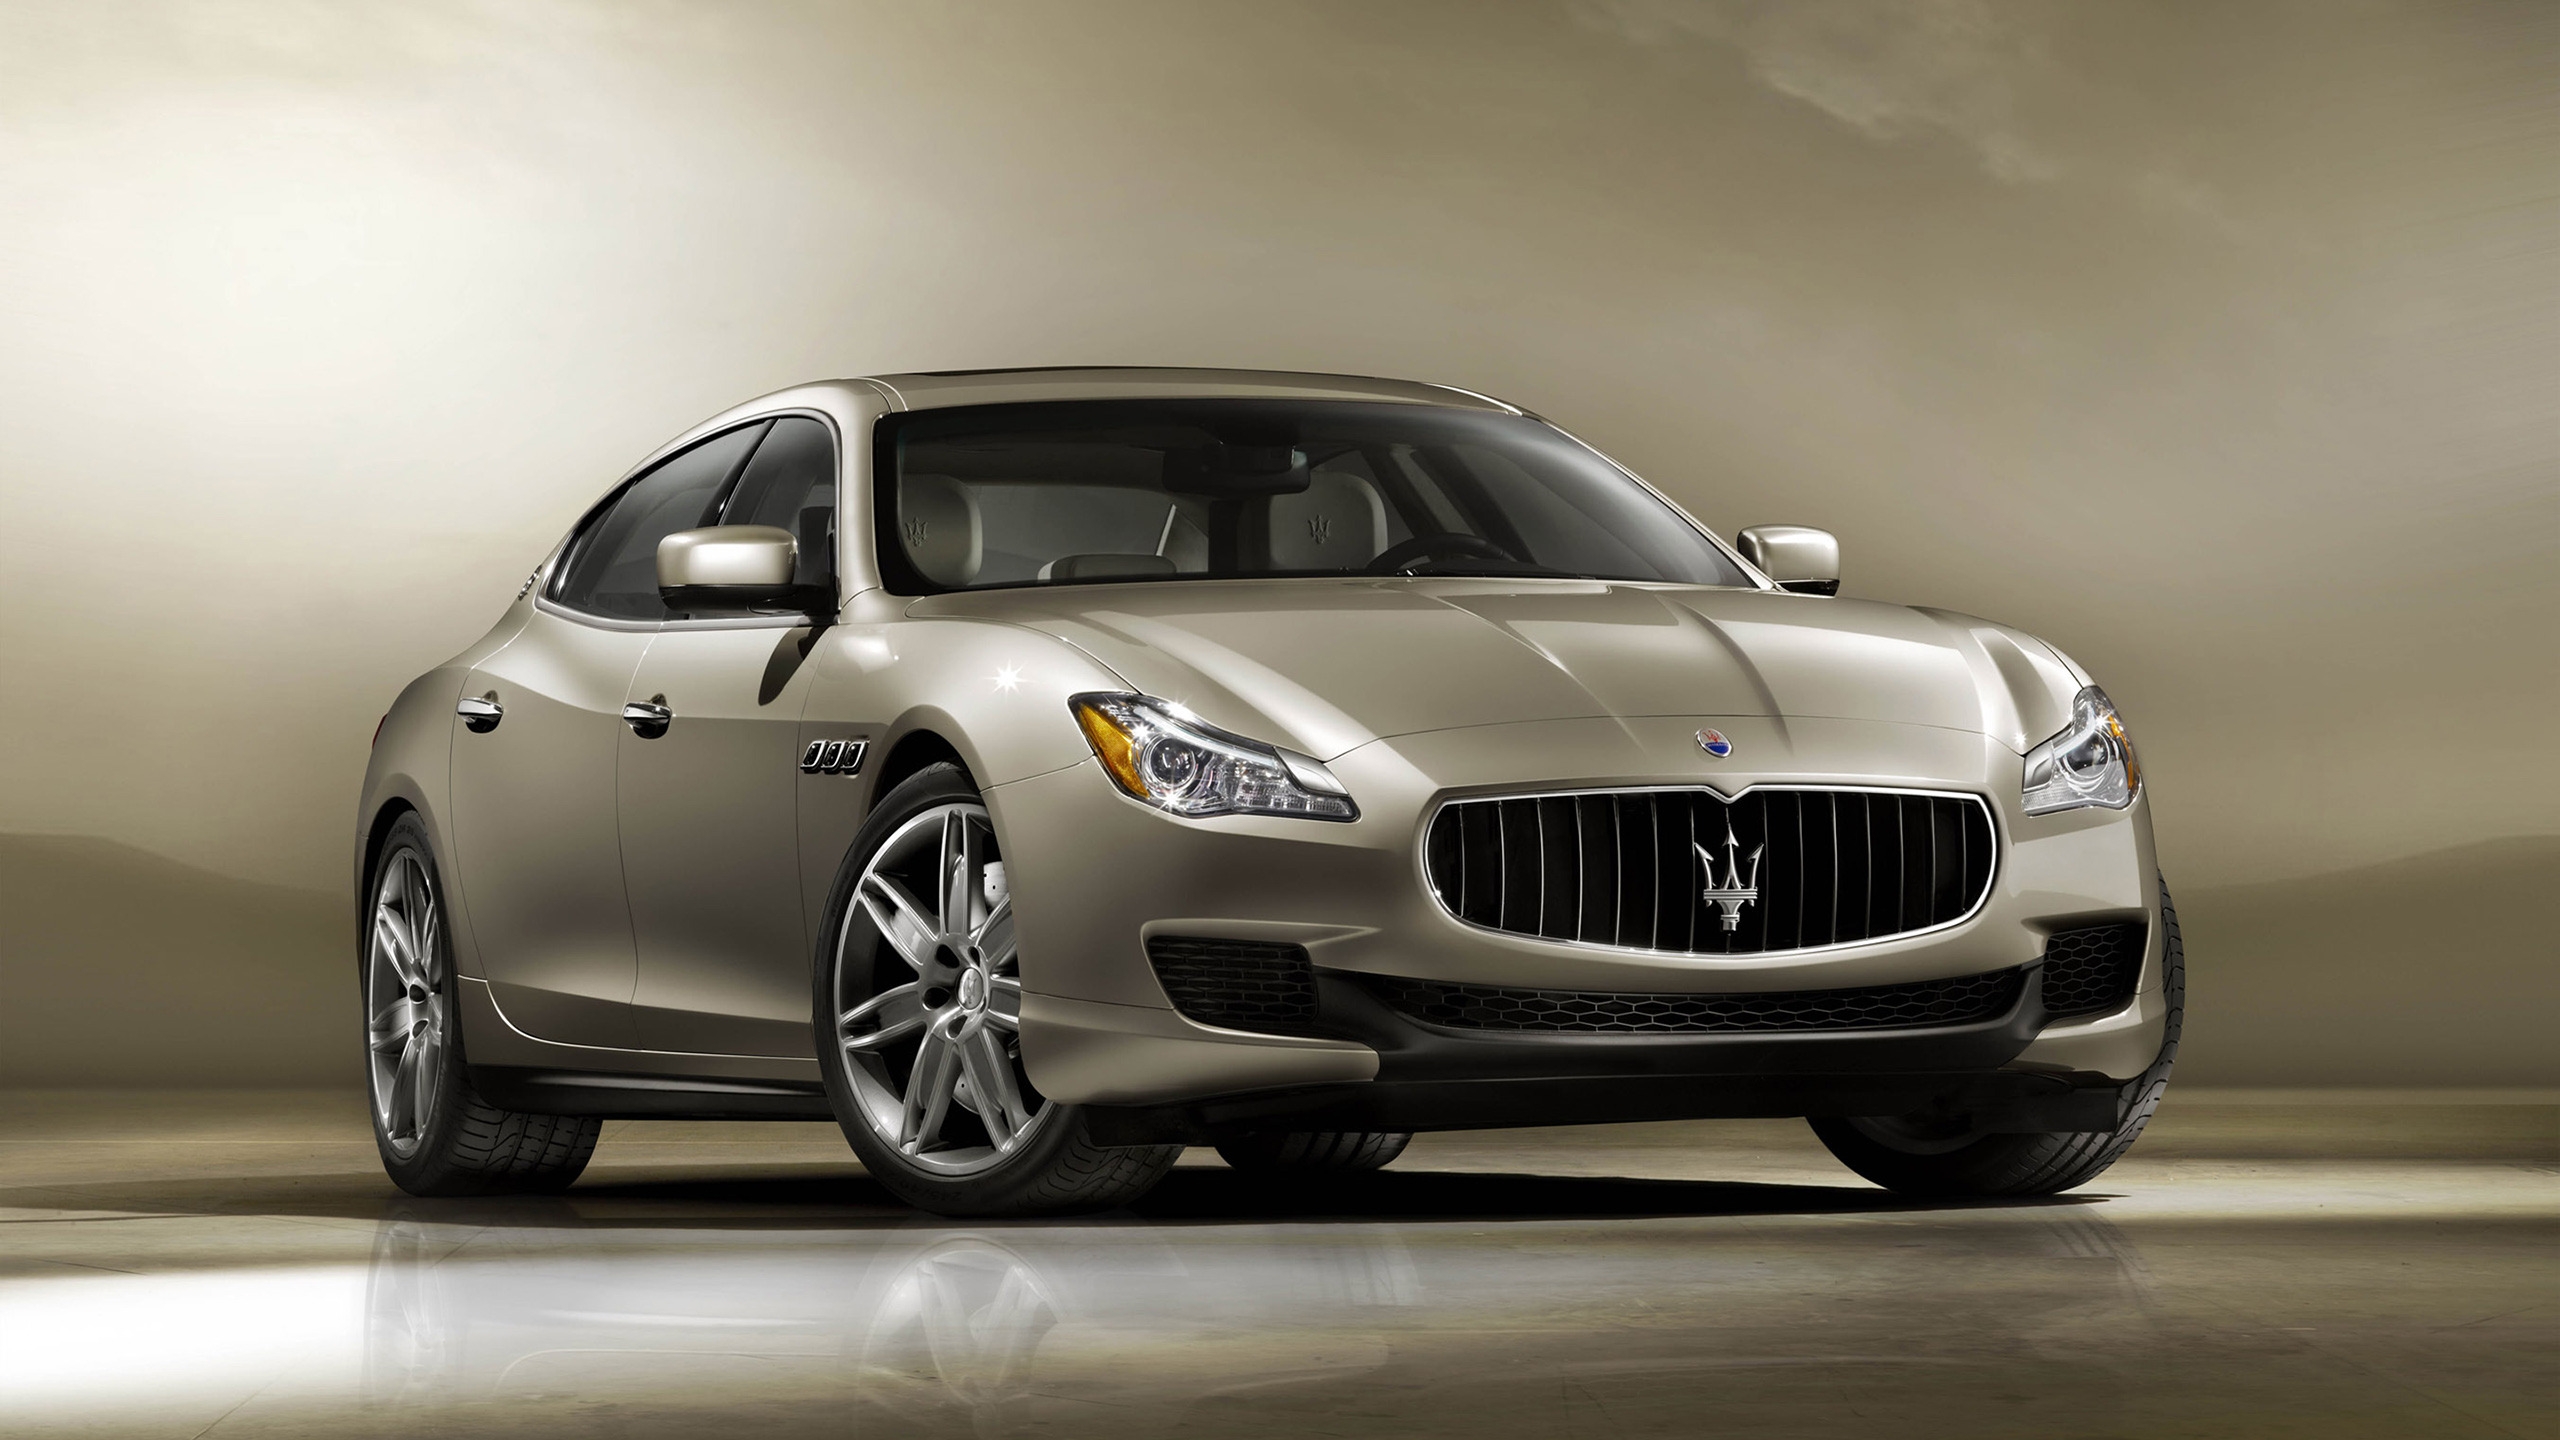 2013 Maserati Quattroporte Front for 2560x1440 HDTV resolution